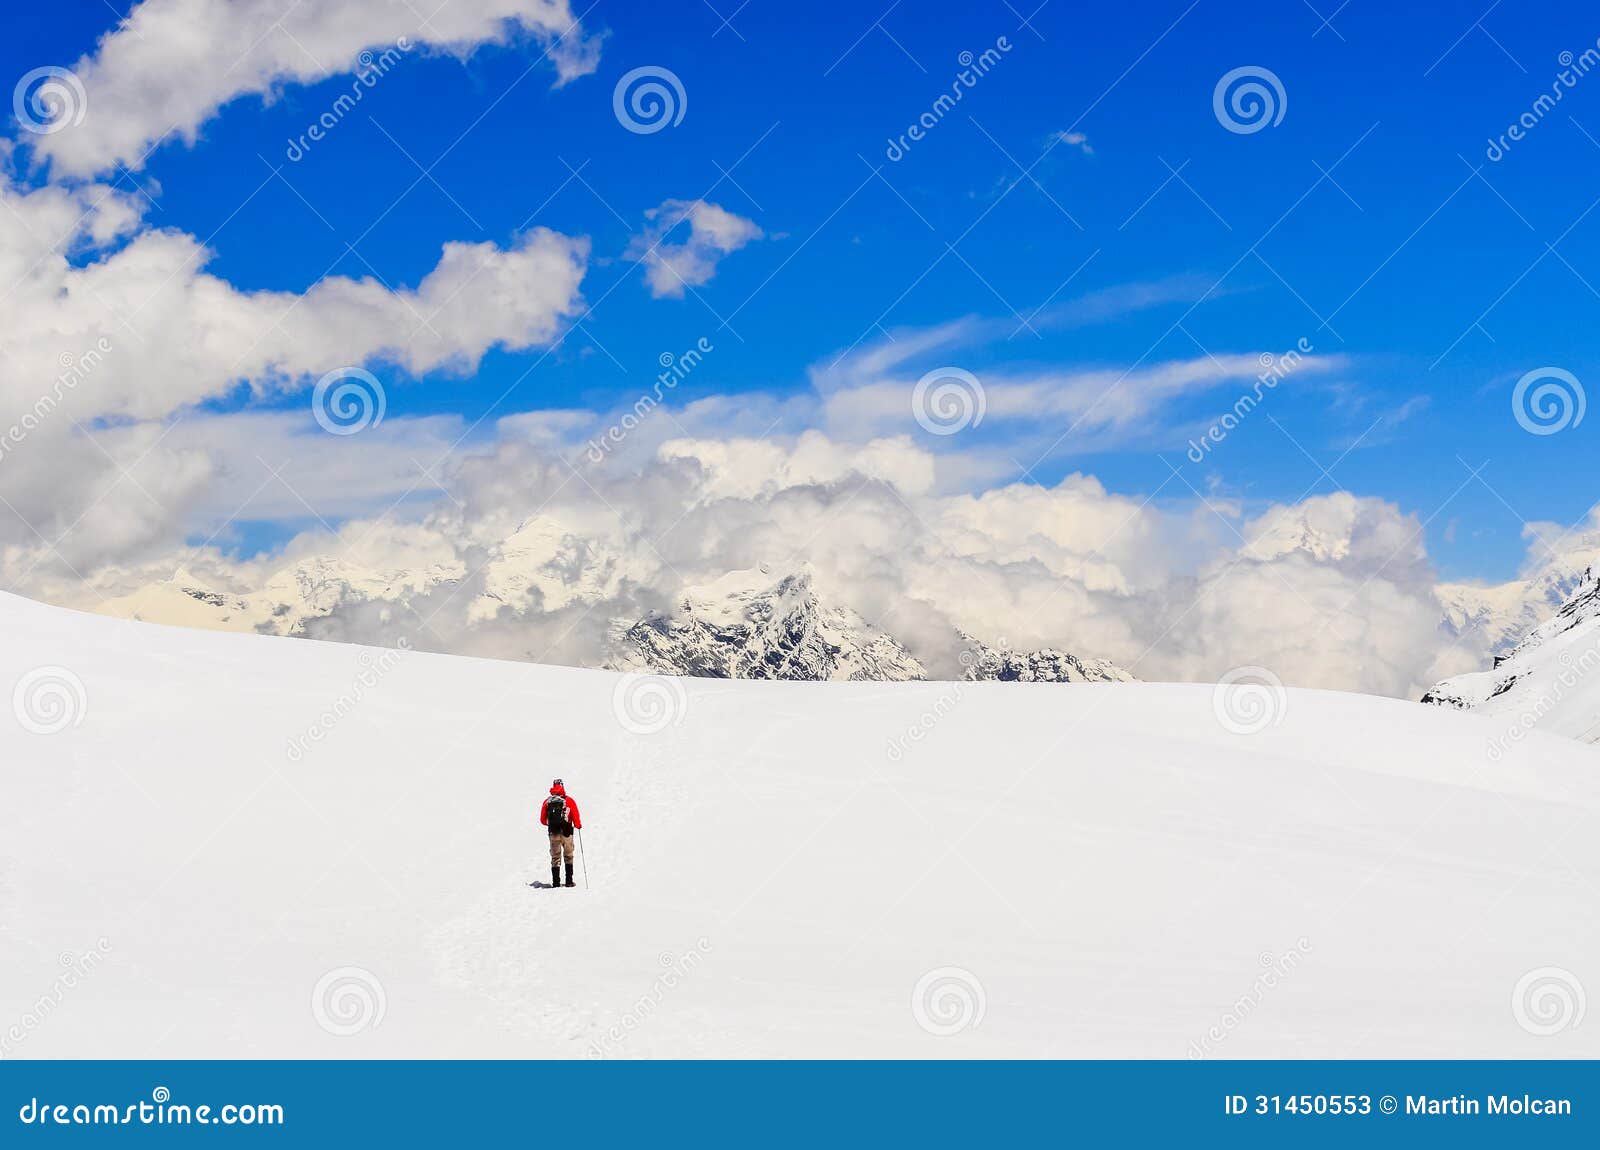 mountain trekker walking in high winter himalayas mountains